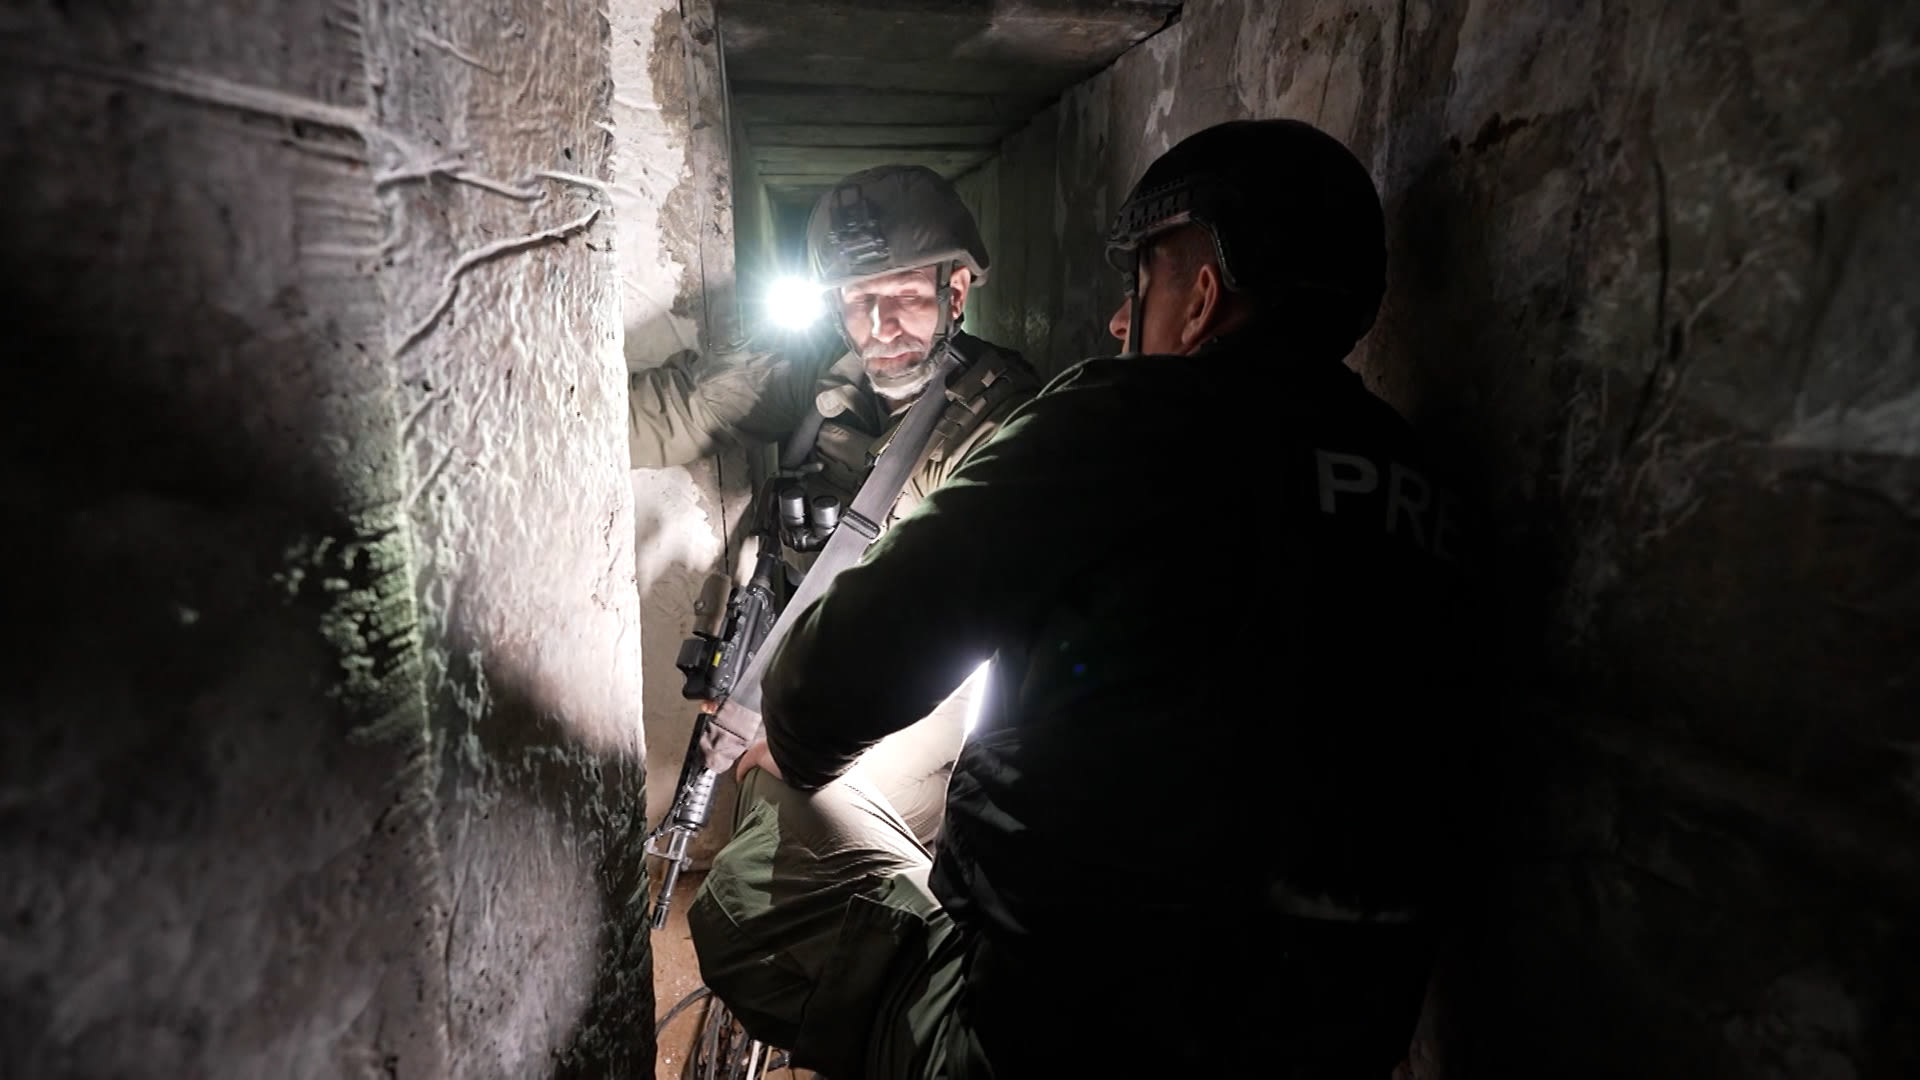 Štáb CNN společně s vojáky IDF prohledával rozsáhlé tunely v Pásmu Gazy.